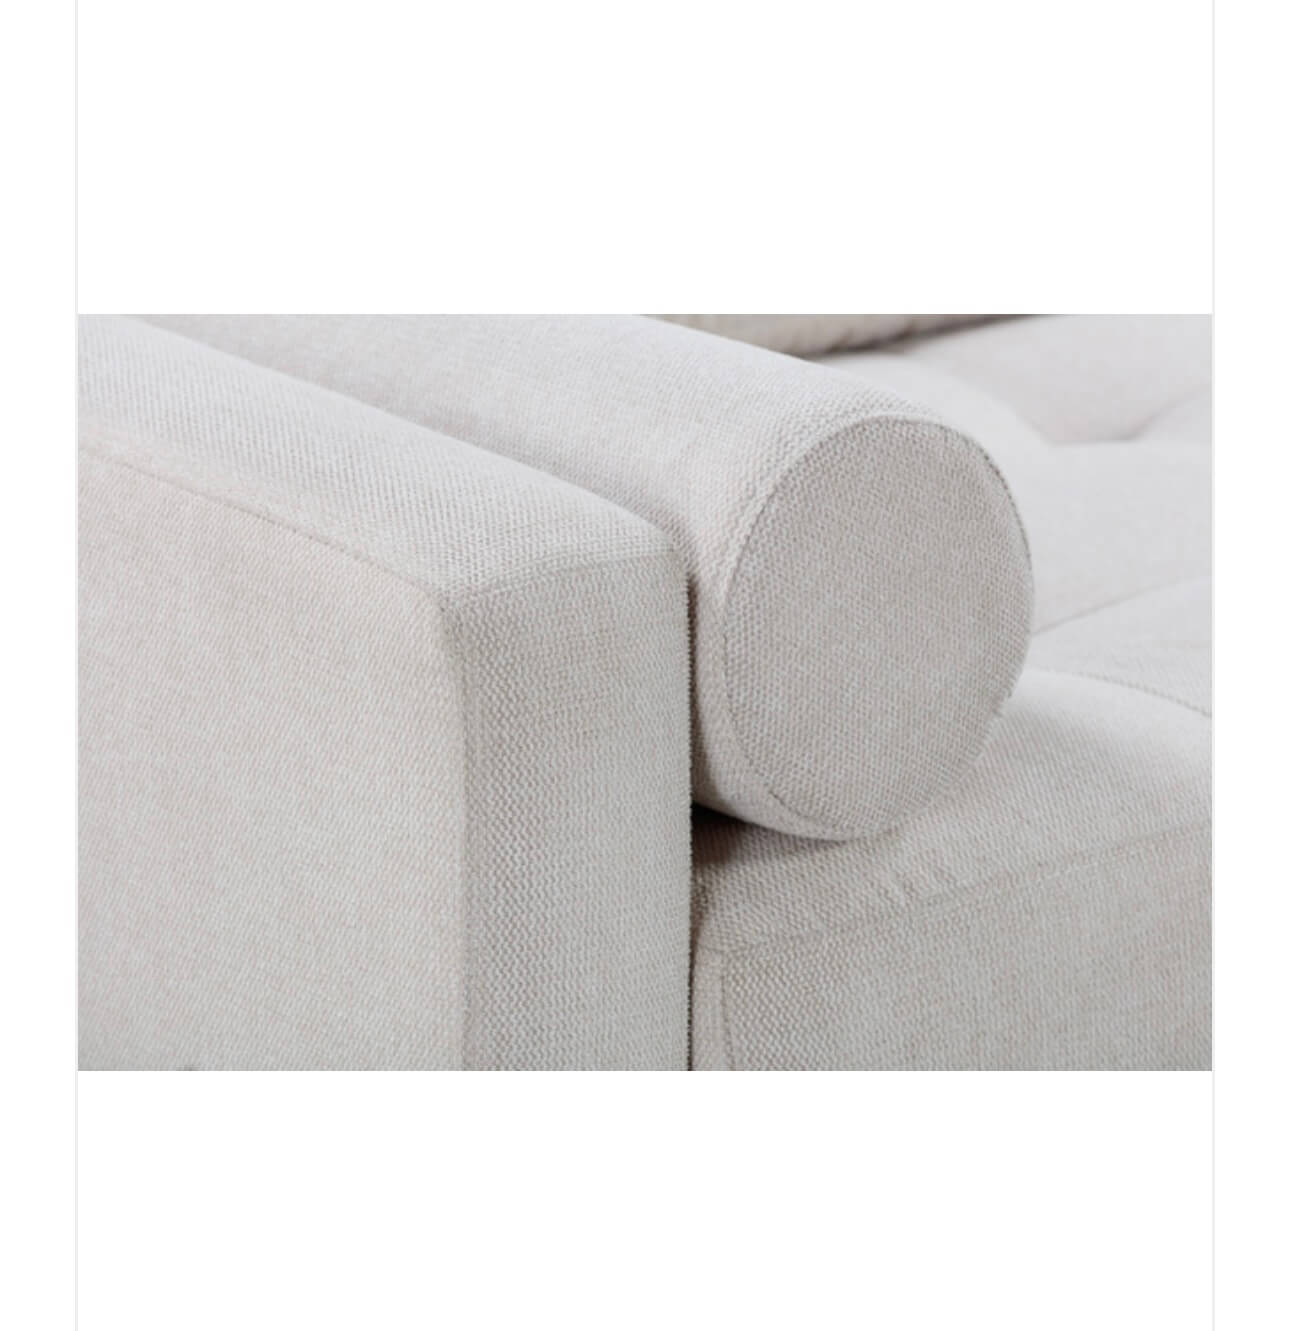 Neutral Textured Fabric Sofa